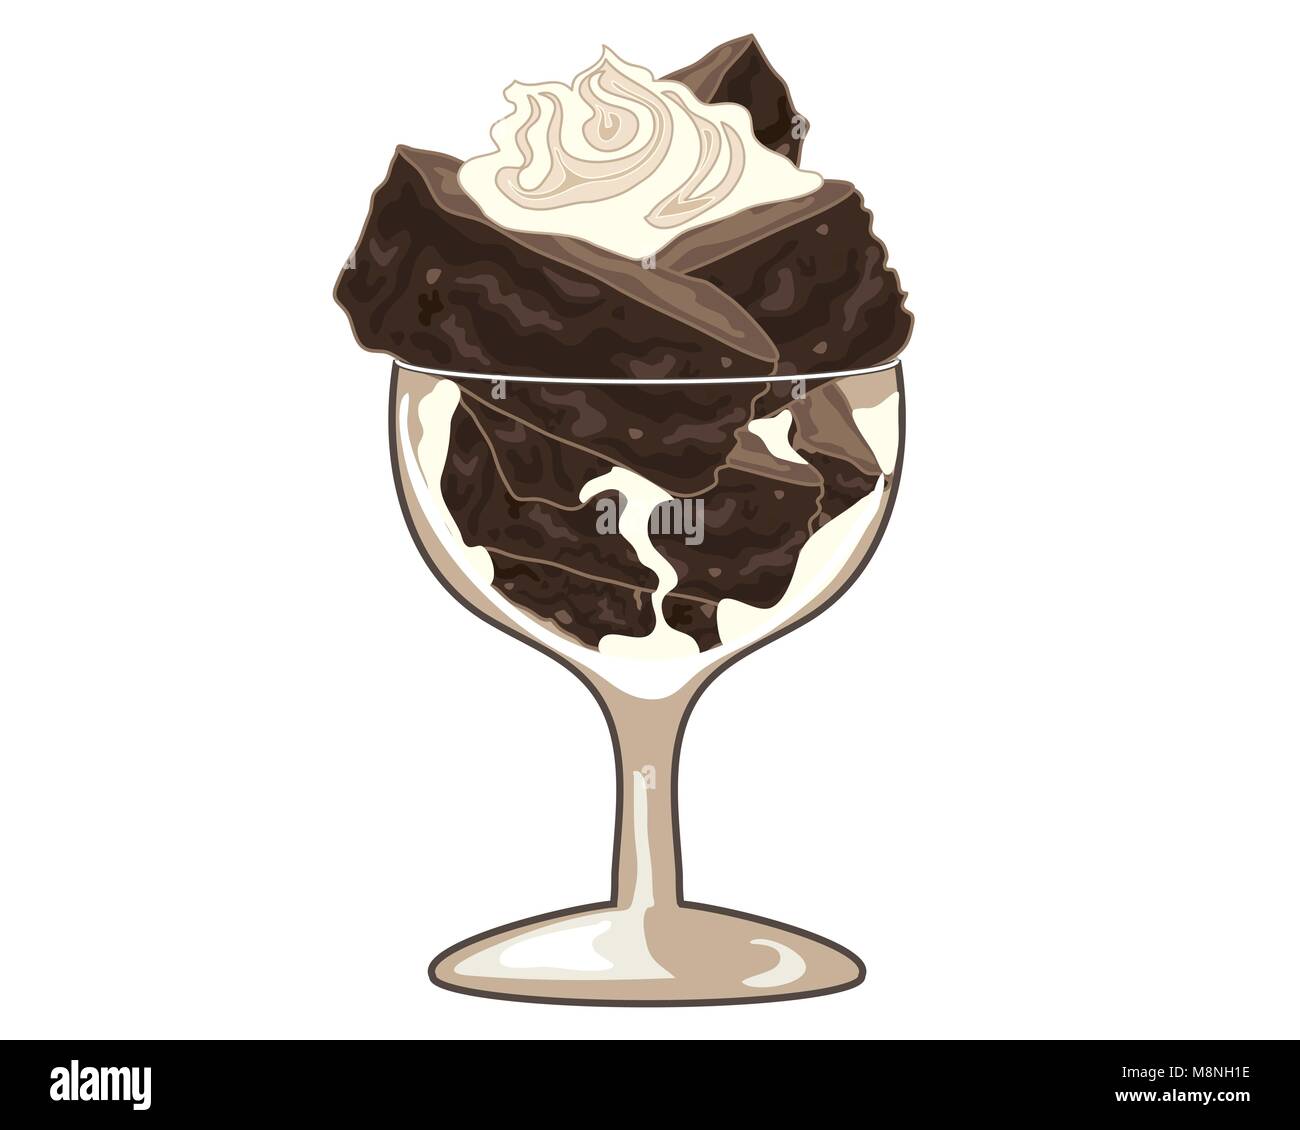 Un vecteur illustration au format eps d'une fantaisie verre avec brownie au chocolat Gâteau empilé avec un tourbillon de crème fouettée sur un fond blanc Illustration de Vecteur